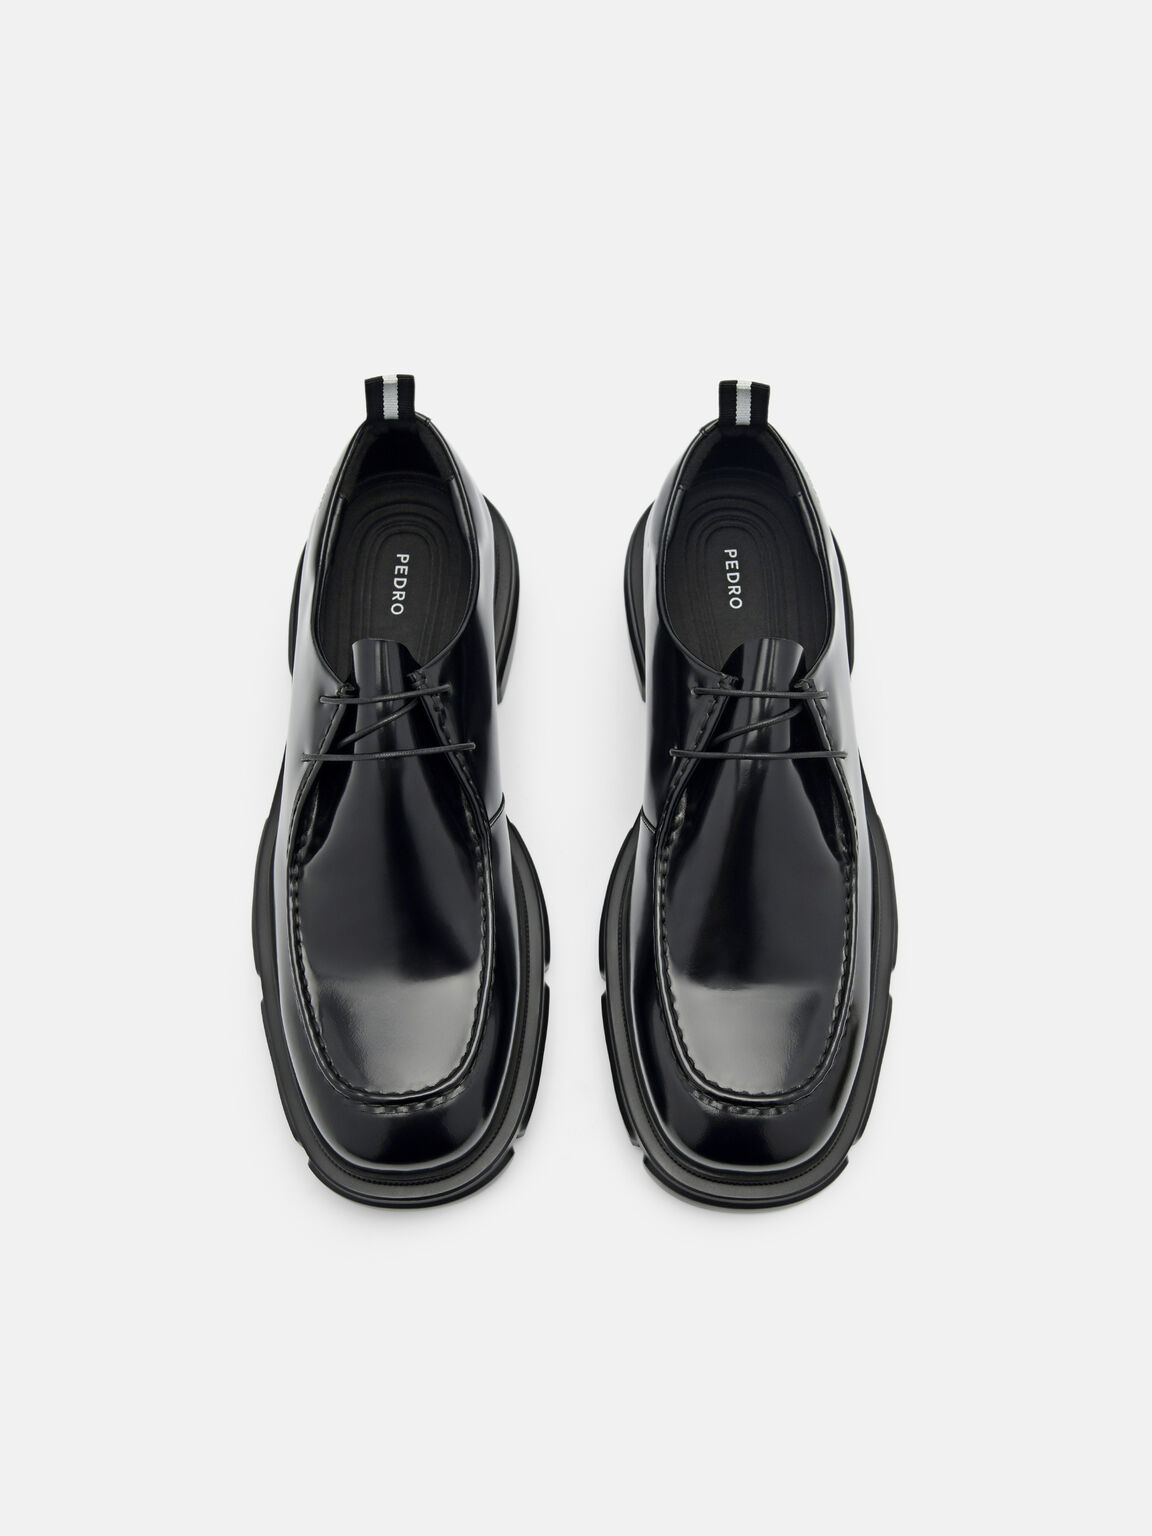 Ellis Leather Lace-up Shoes, Black